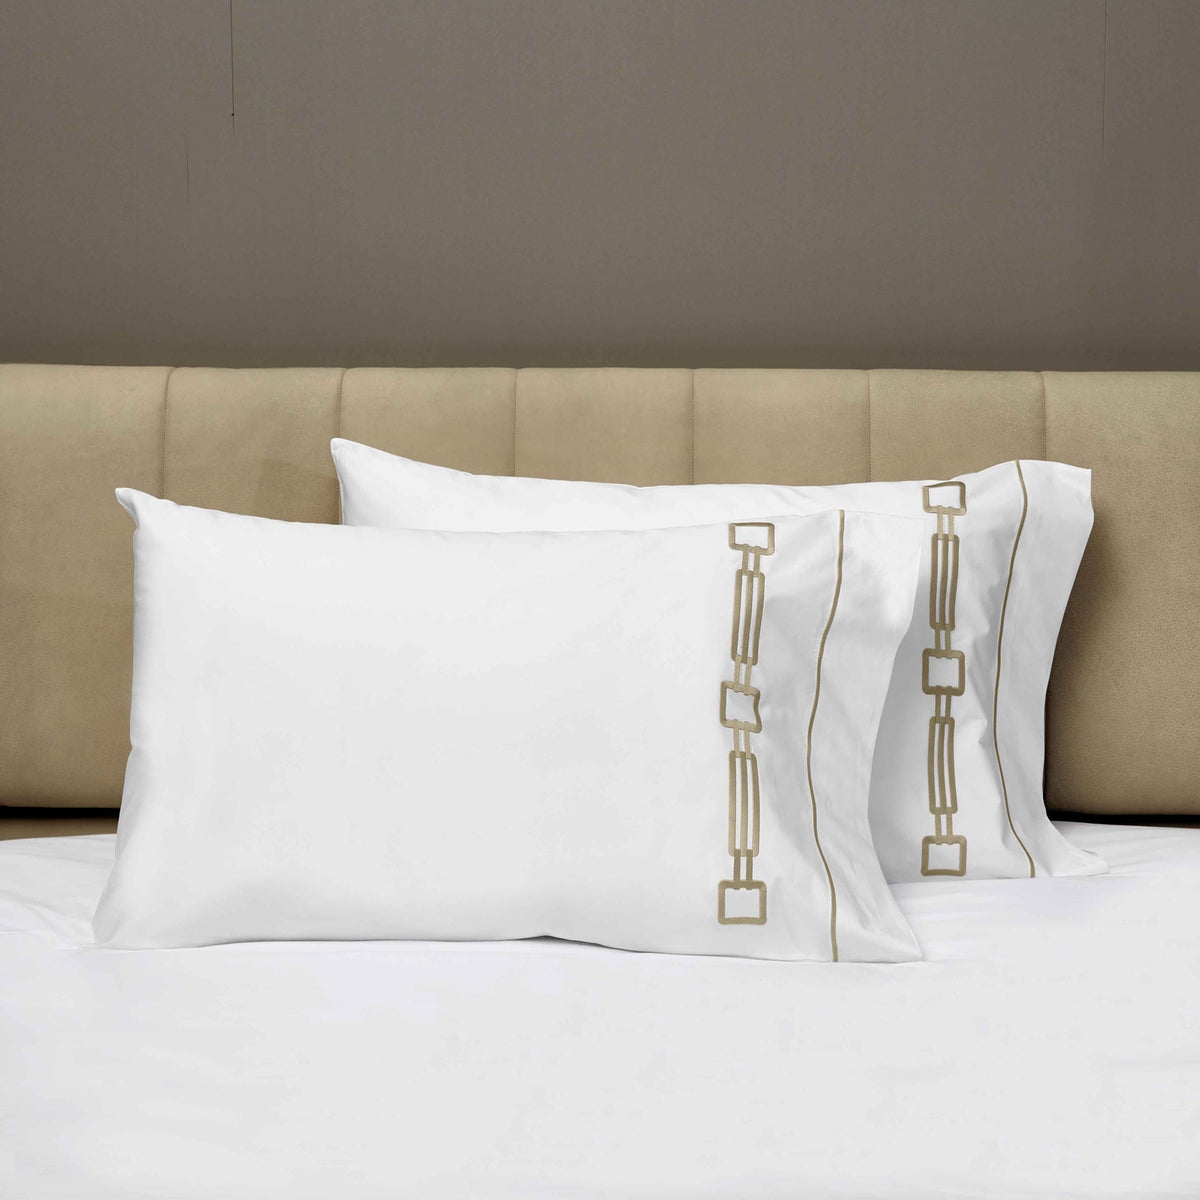 Closeup View of Signoria Retrò Pillowcases in White/Taupe Color